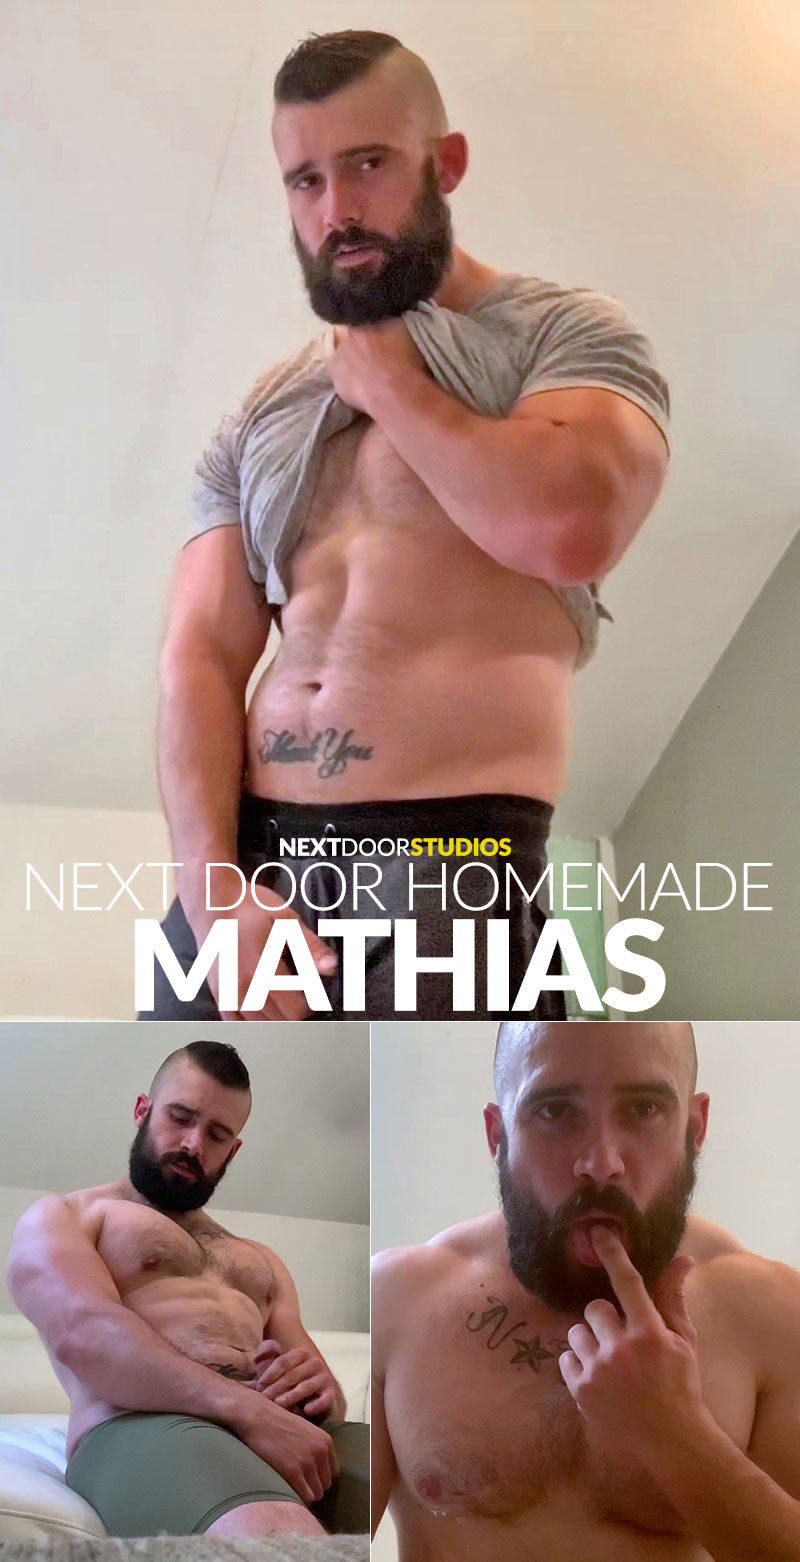 Next Door Studios: Mathias rubs one out (“Next Door Homemade”)